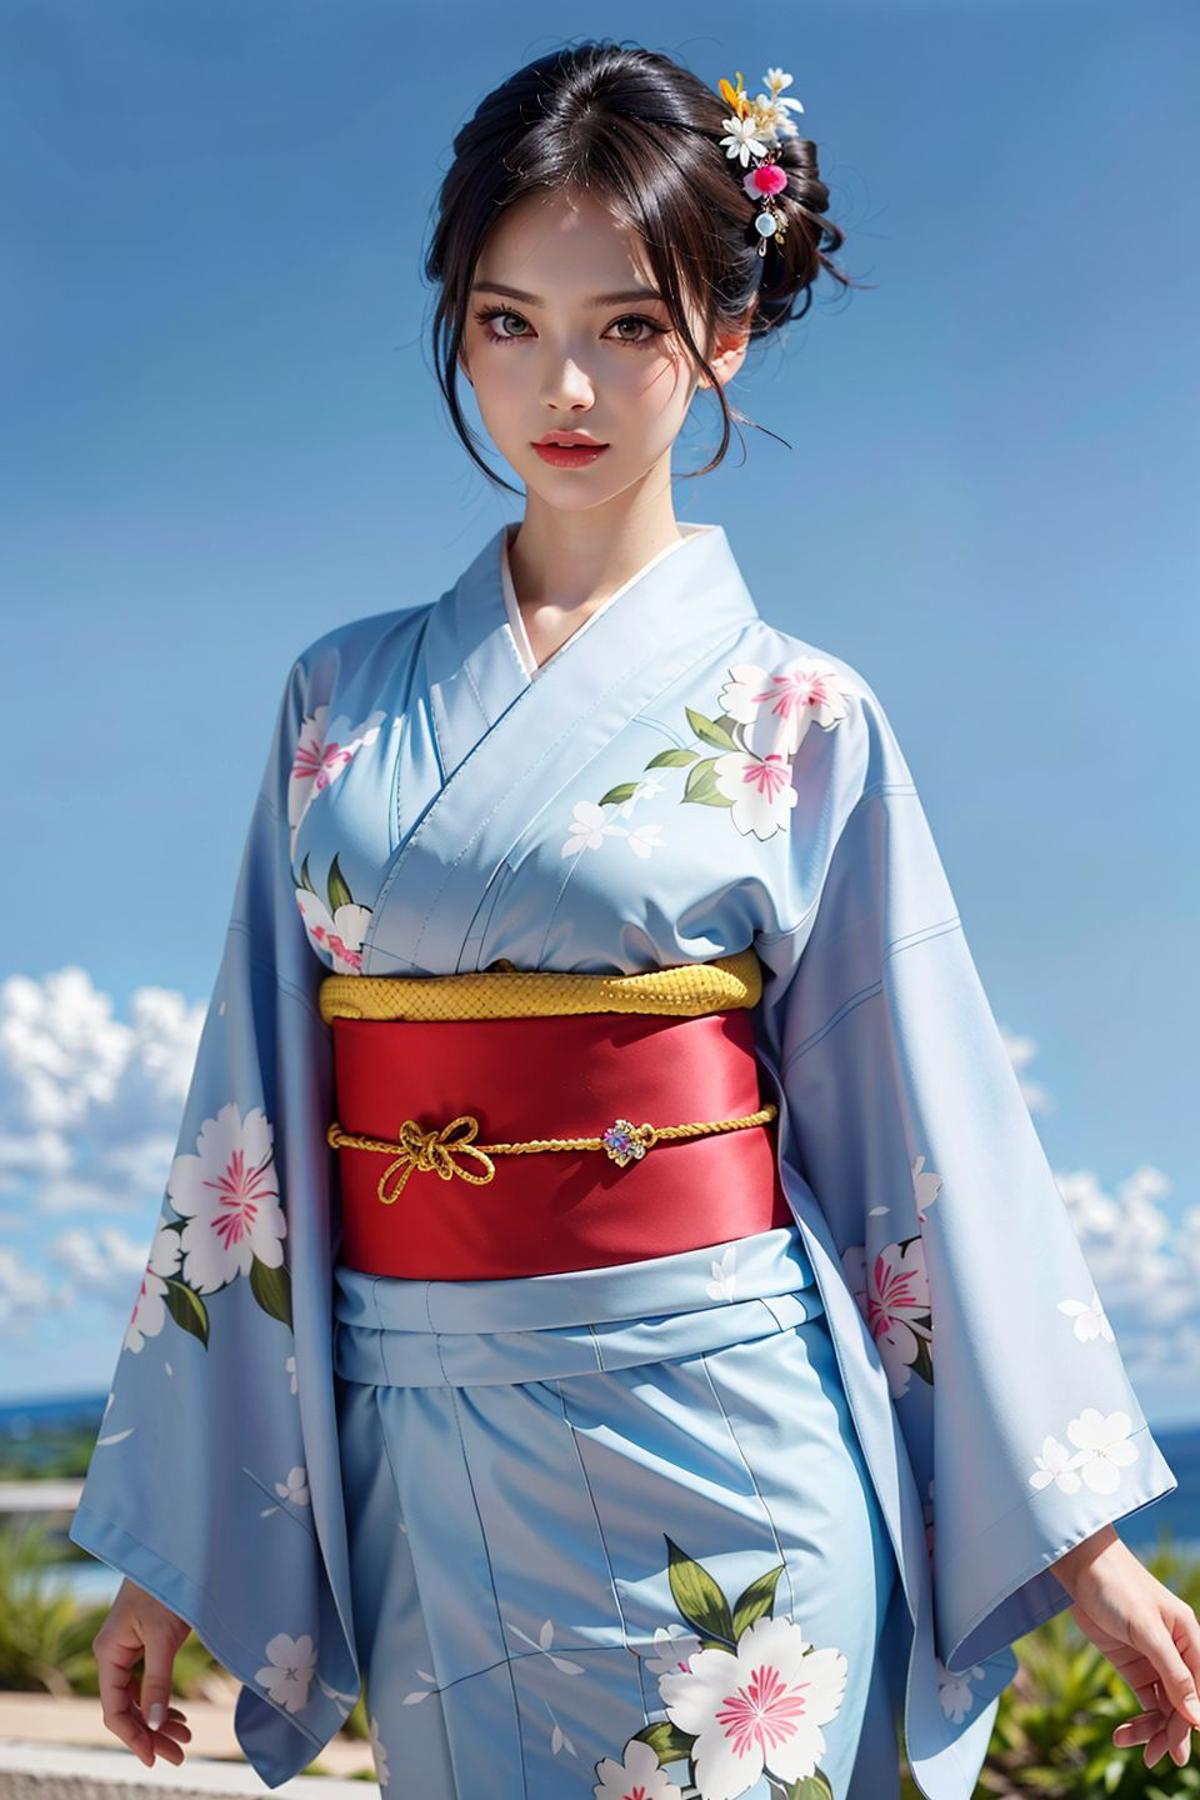 一件简单的和服/浴衣 a simple kimono/yukata image by ylnnn